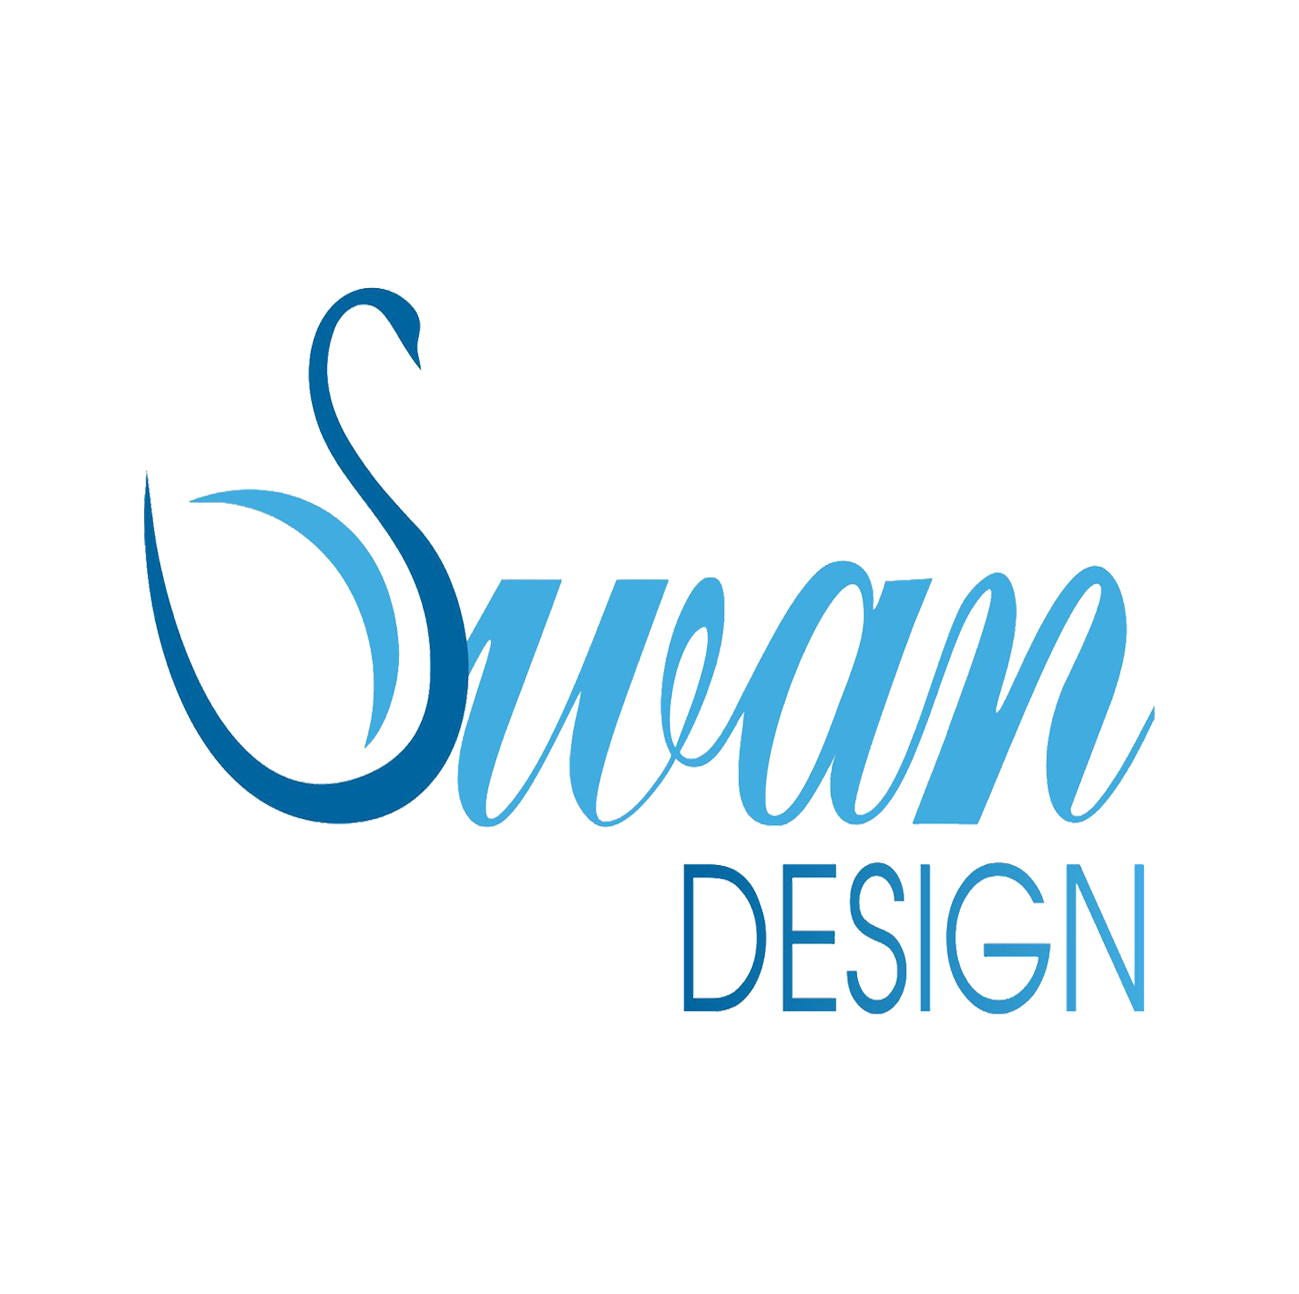 Swandesign – Thiết kế thi công nội thất chuyên nghiệp